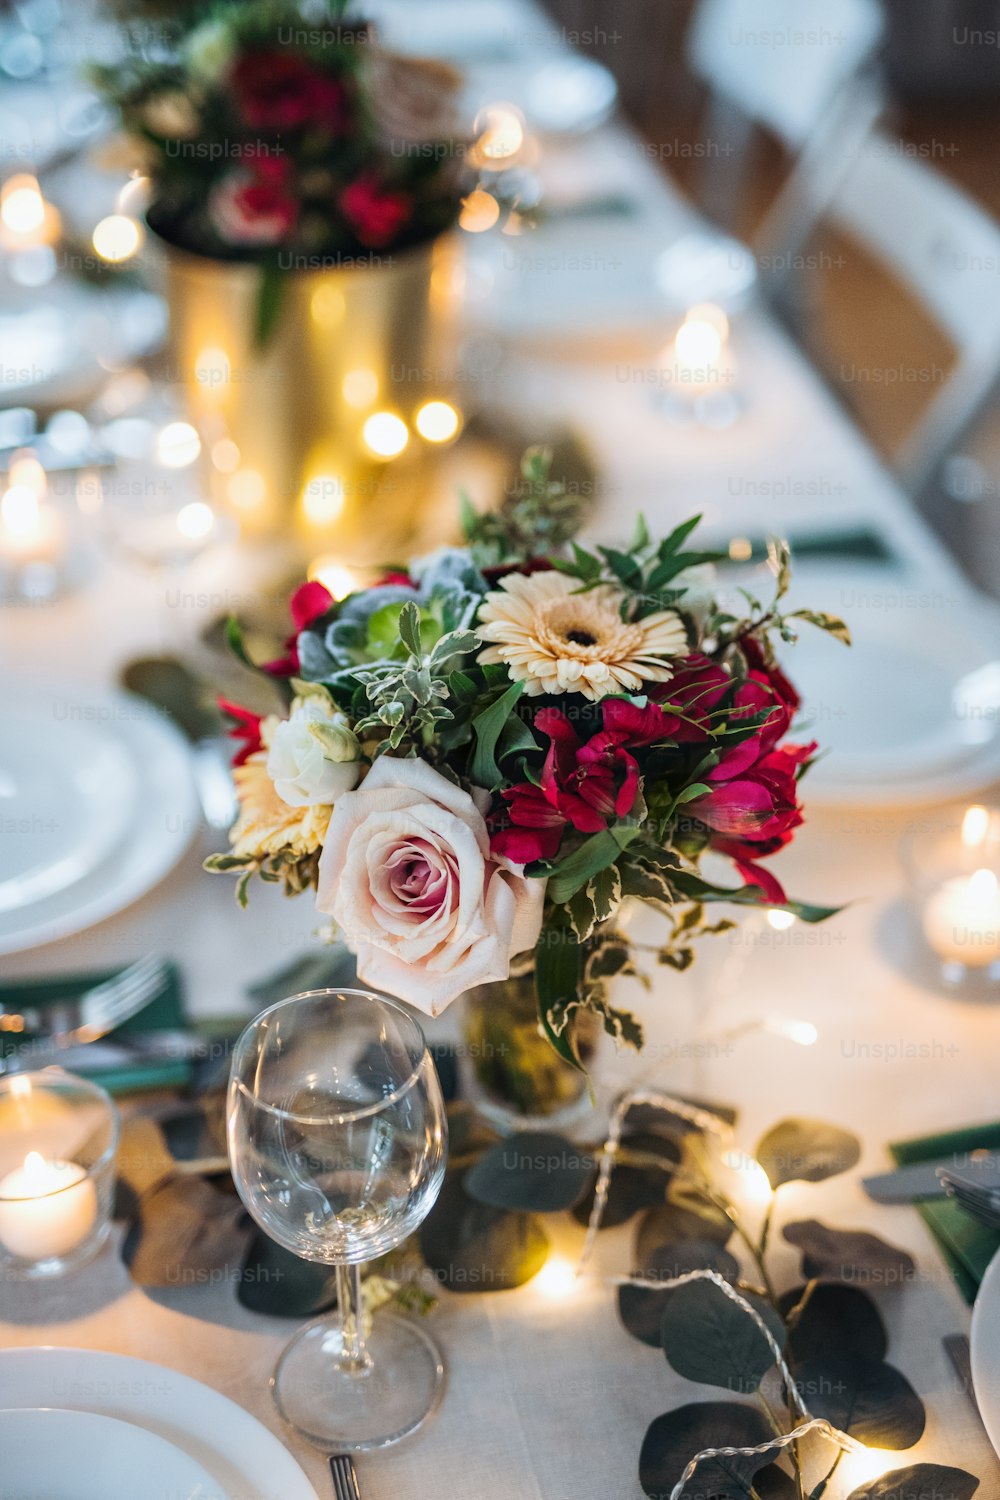 Une table dressée pour un repas à l’intérieur dans une pièce lors d’une fête, d’un mariage ou d’une fête de famille.